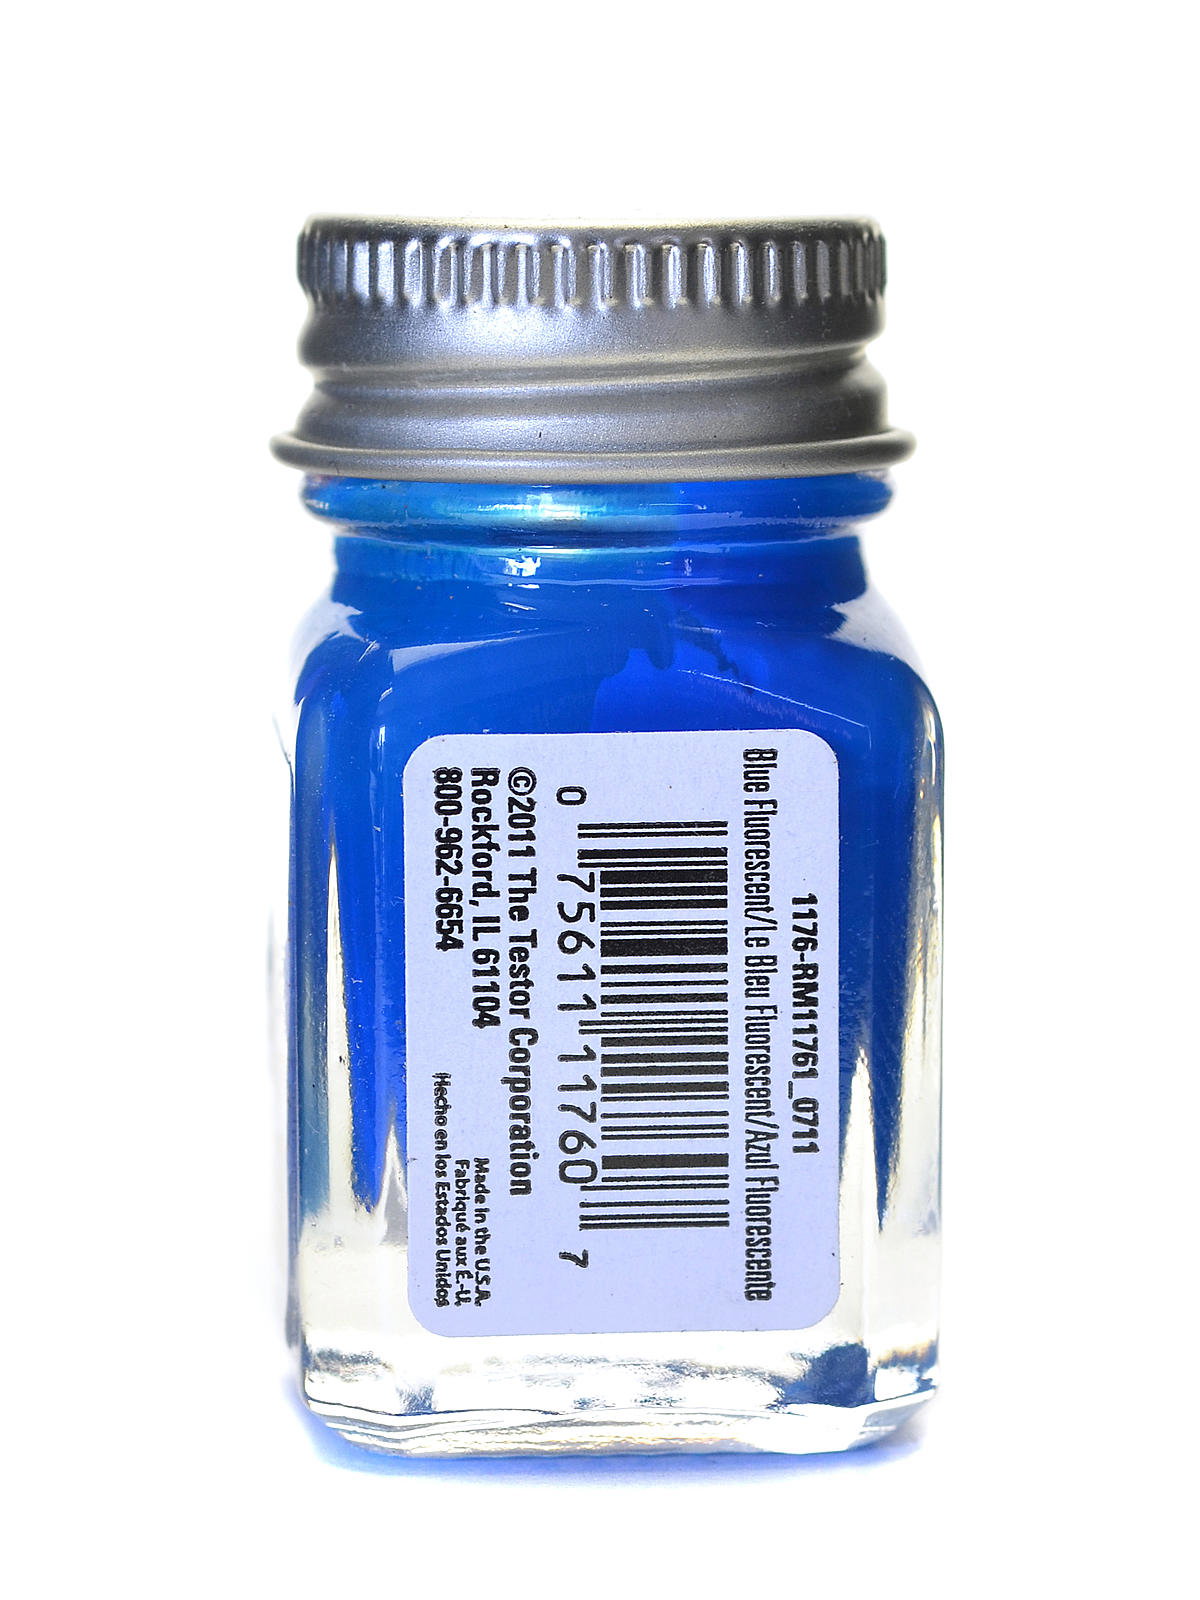 Testors Enamel Paint Open Stock .25oz-Blue Fluorescent - Crazy Model Trains